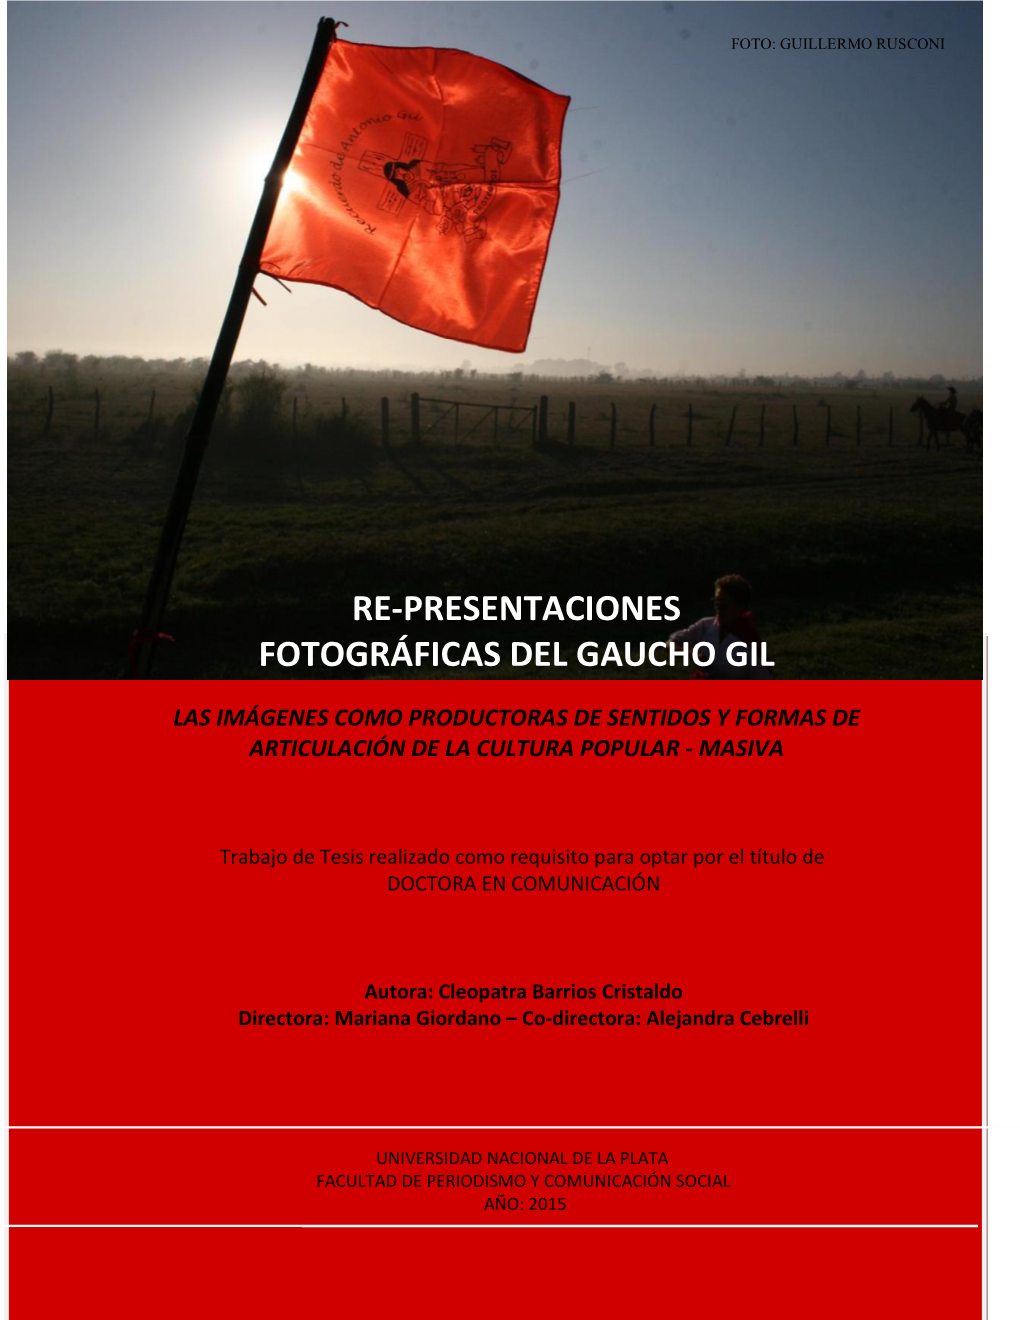 Re-Presentaciones Fotográficas Del Gaucho Gil